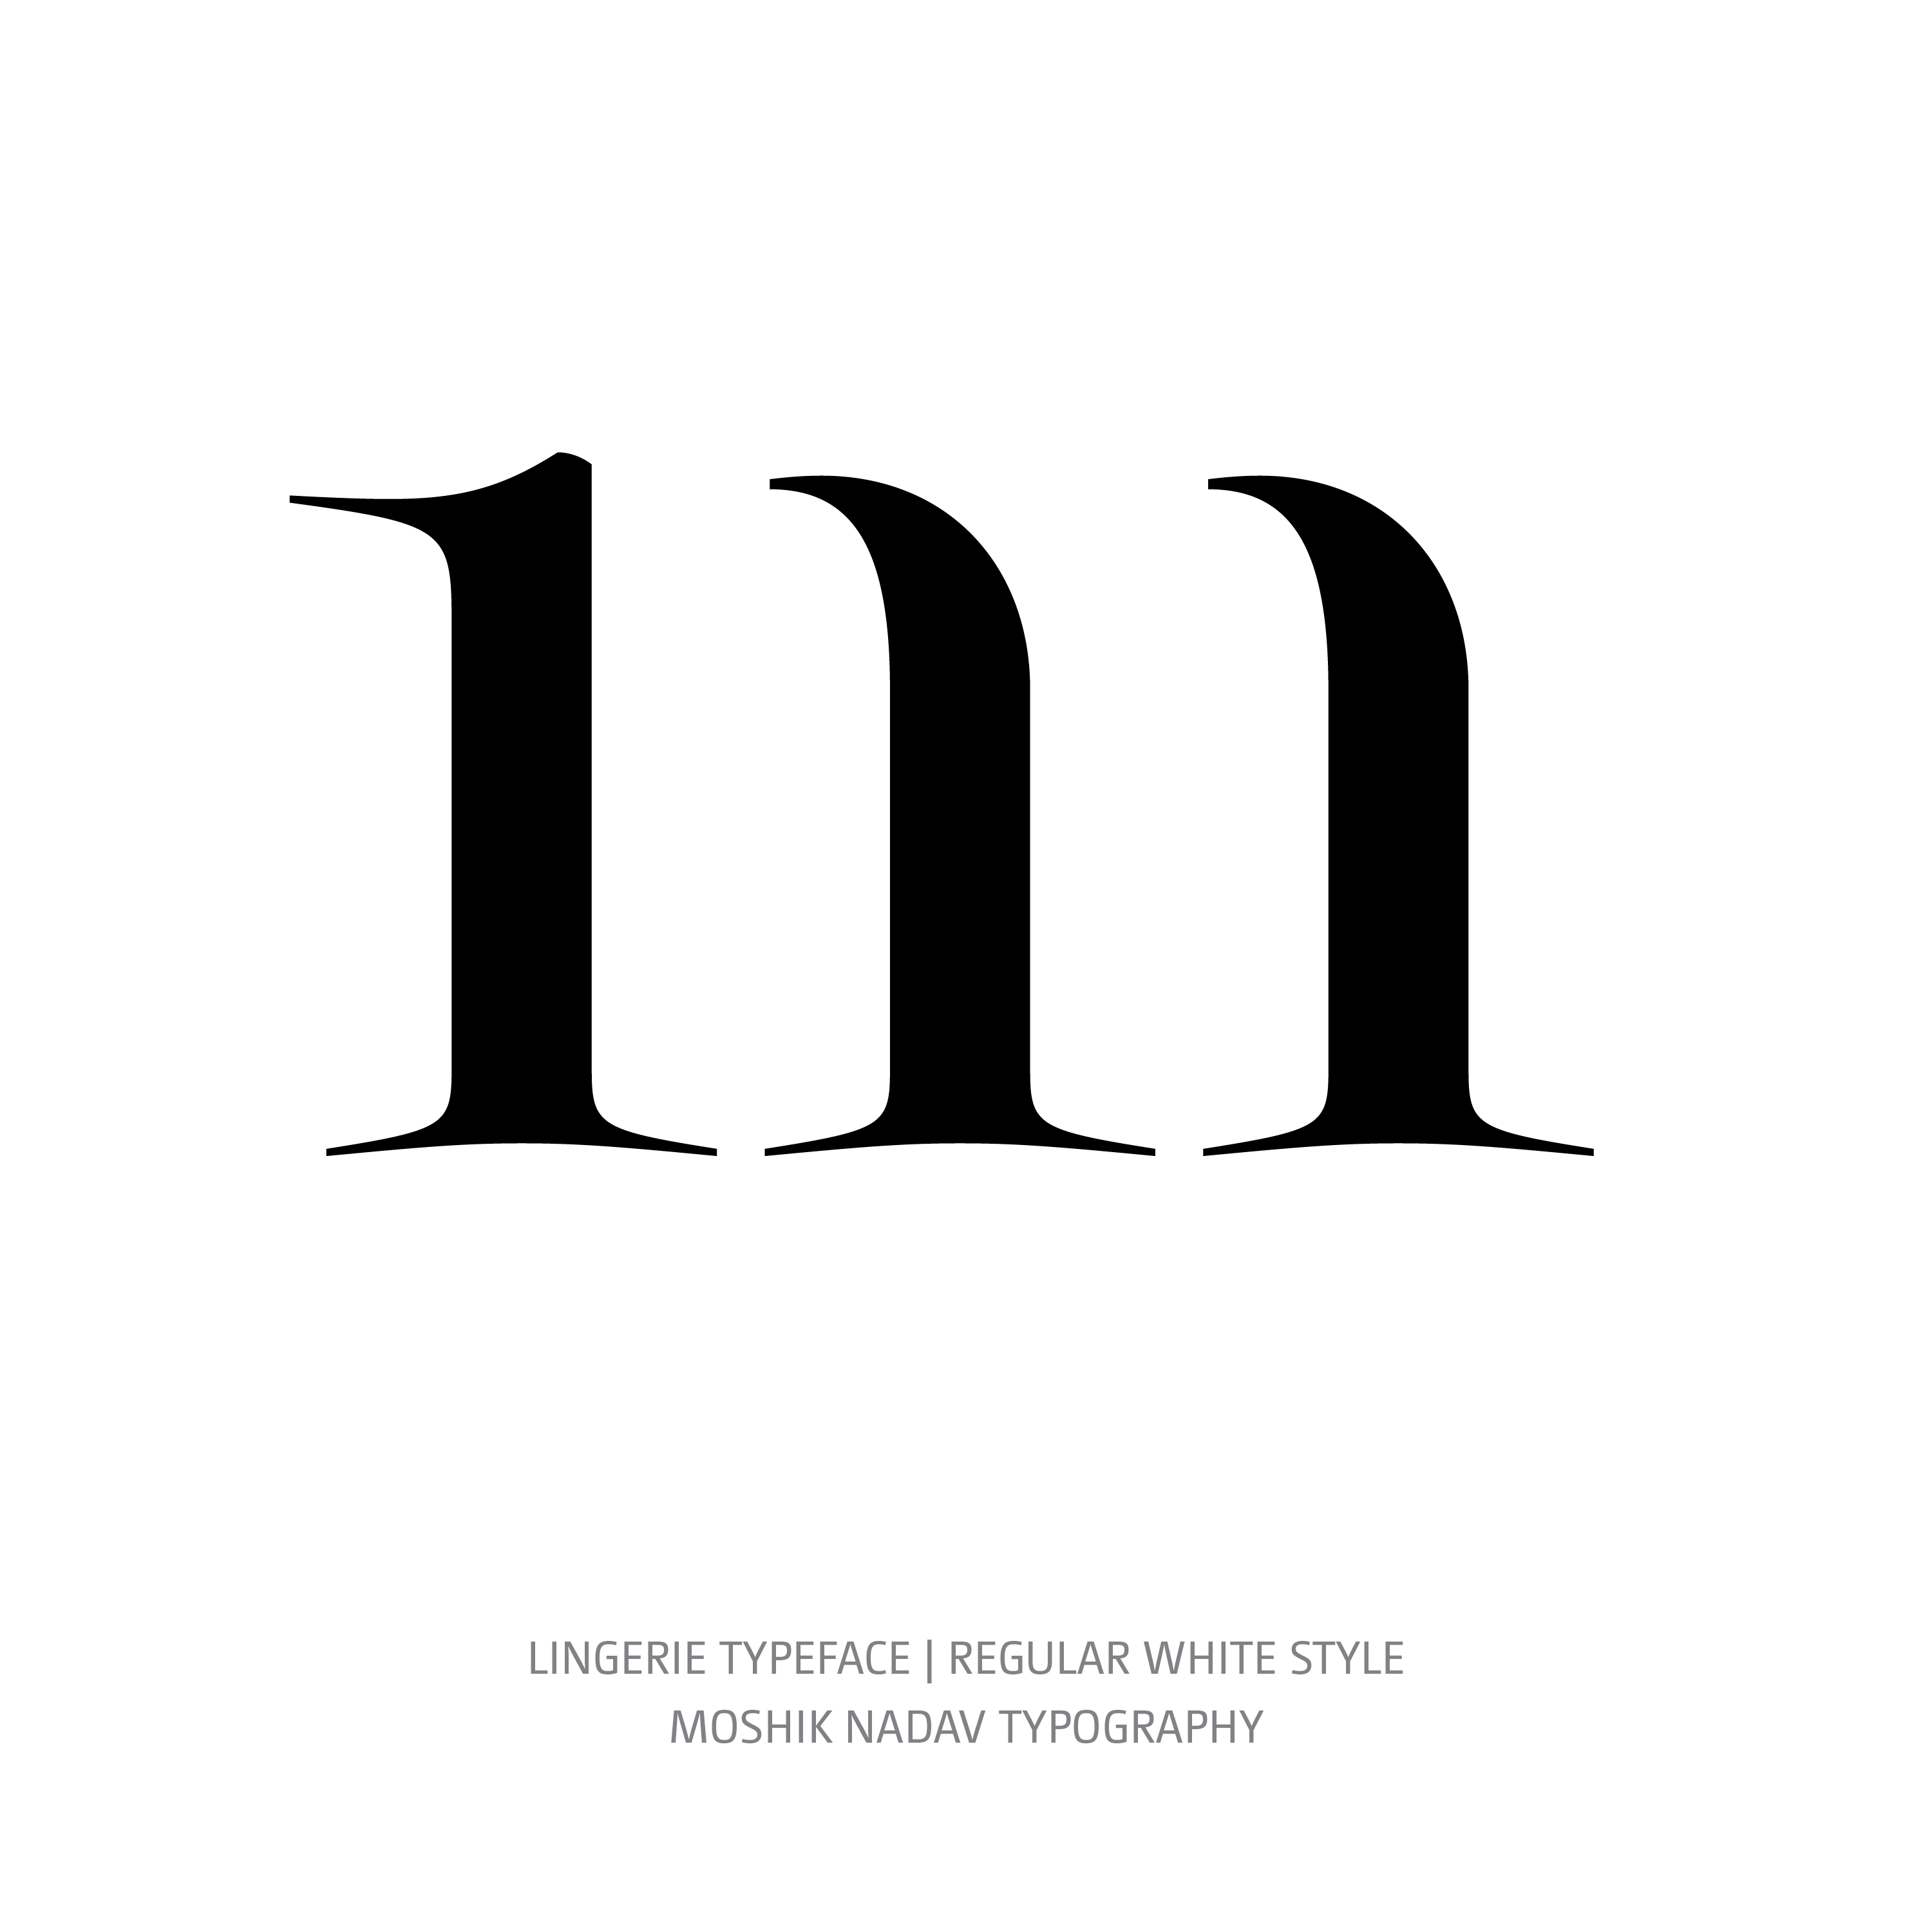 Lingerie Typeface Regular White m